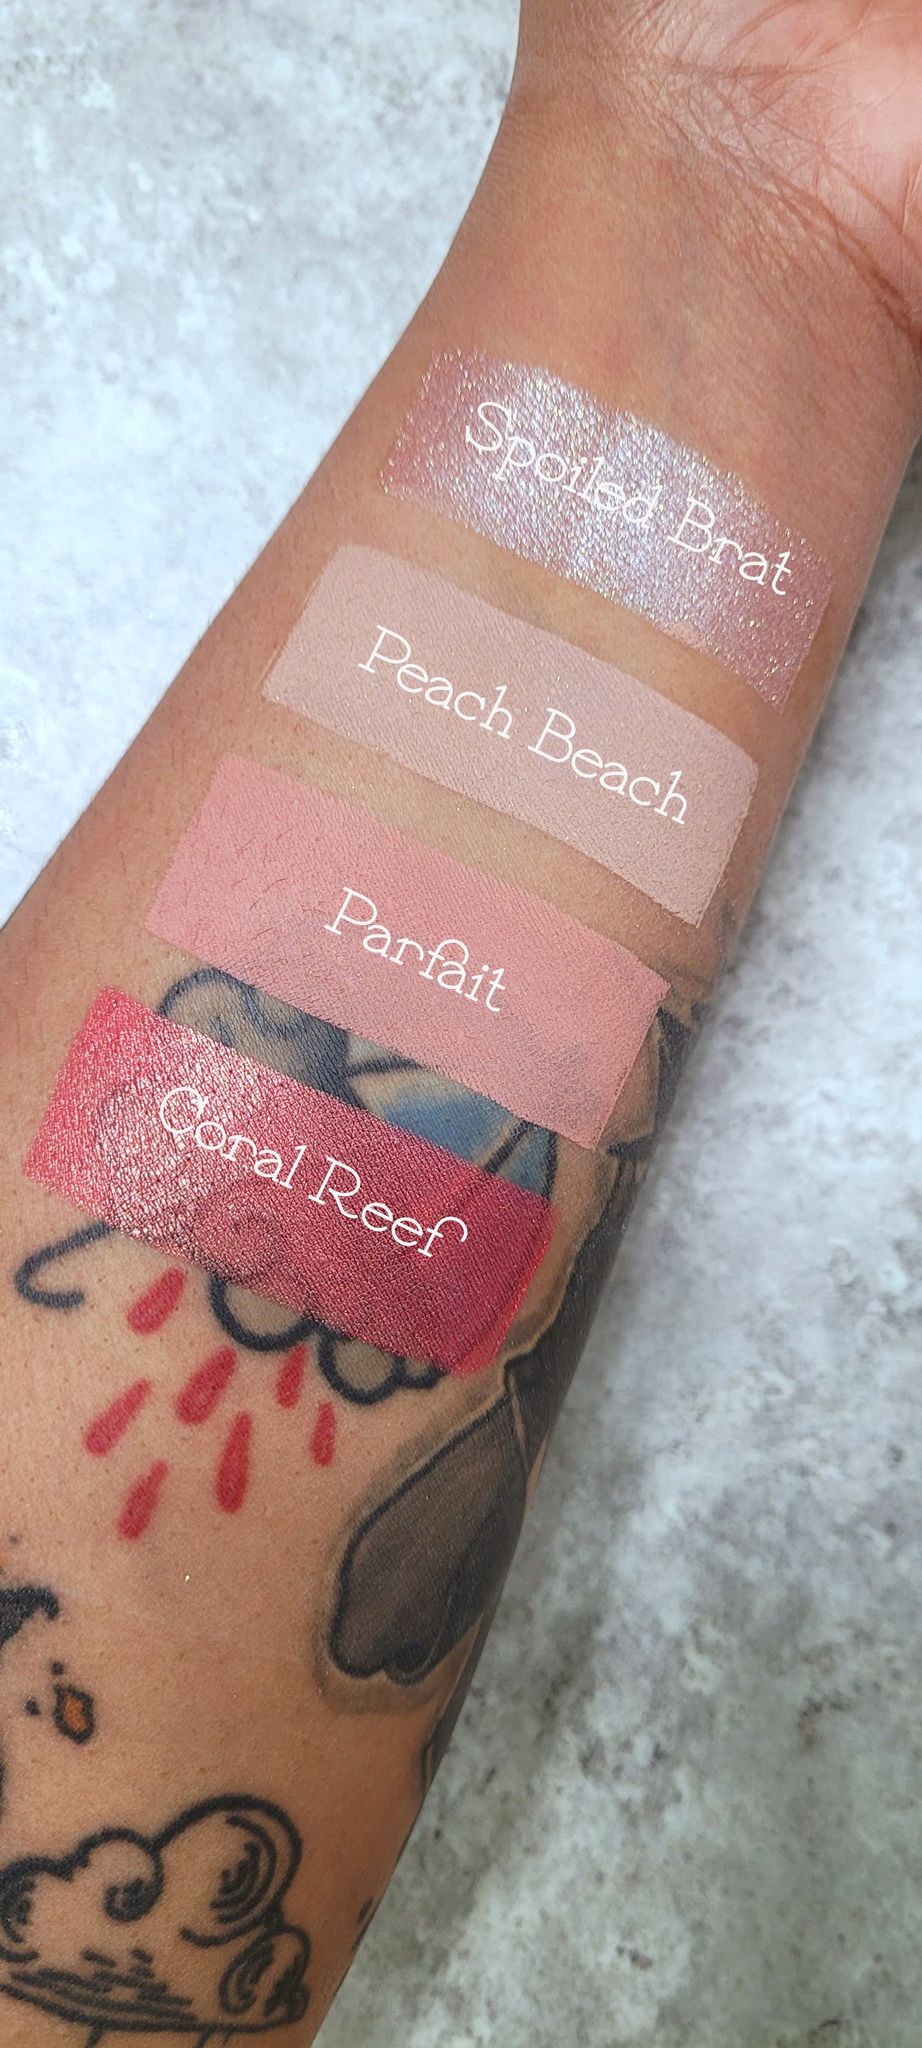 Peach Beach - Eyeshadow Matte Peachy Beige